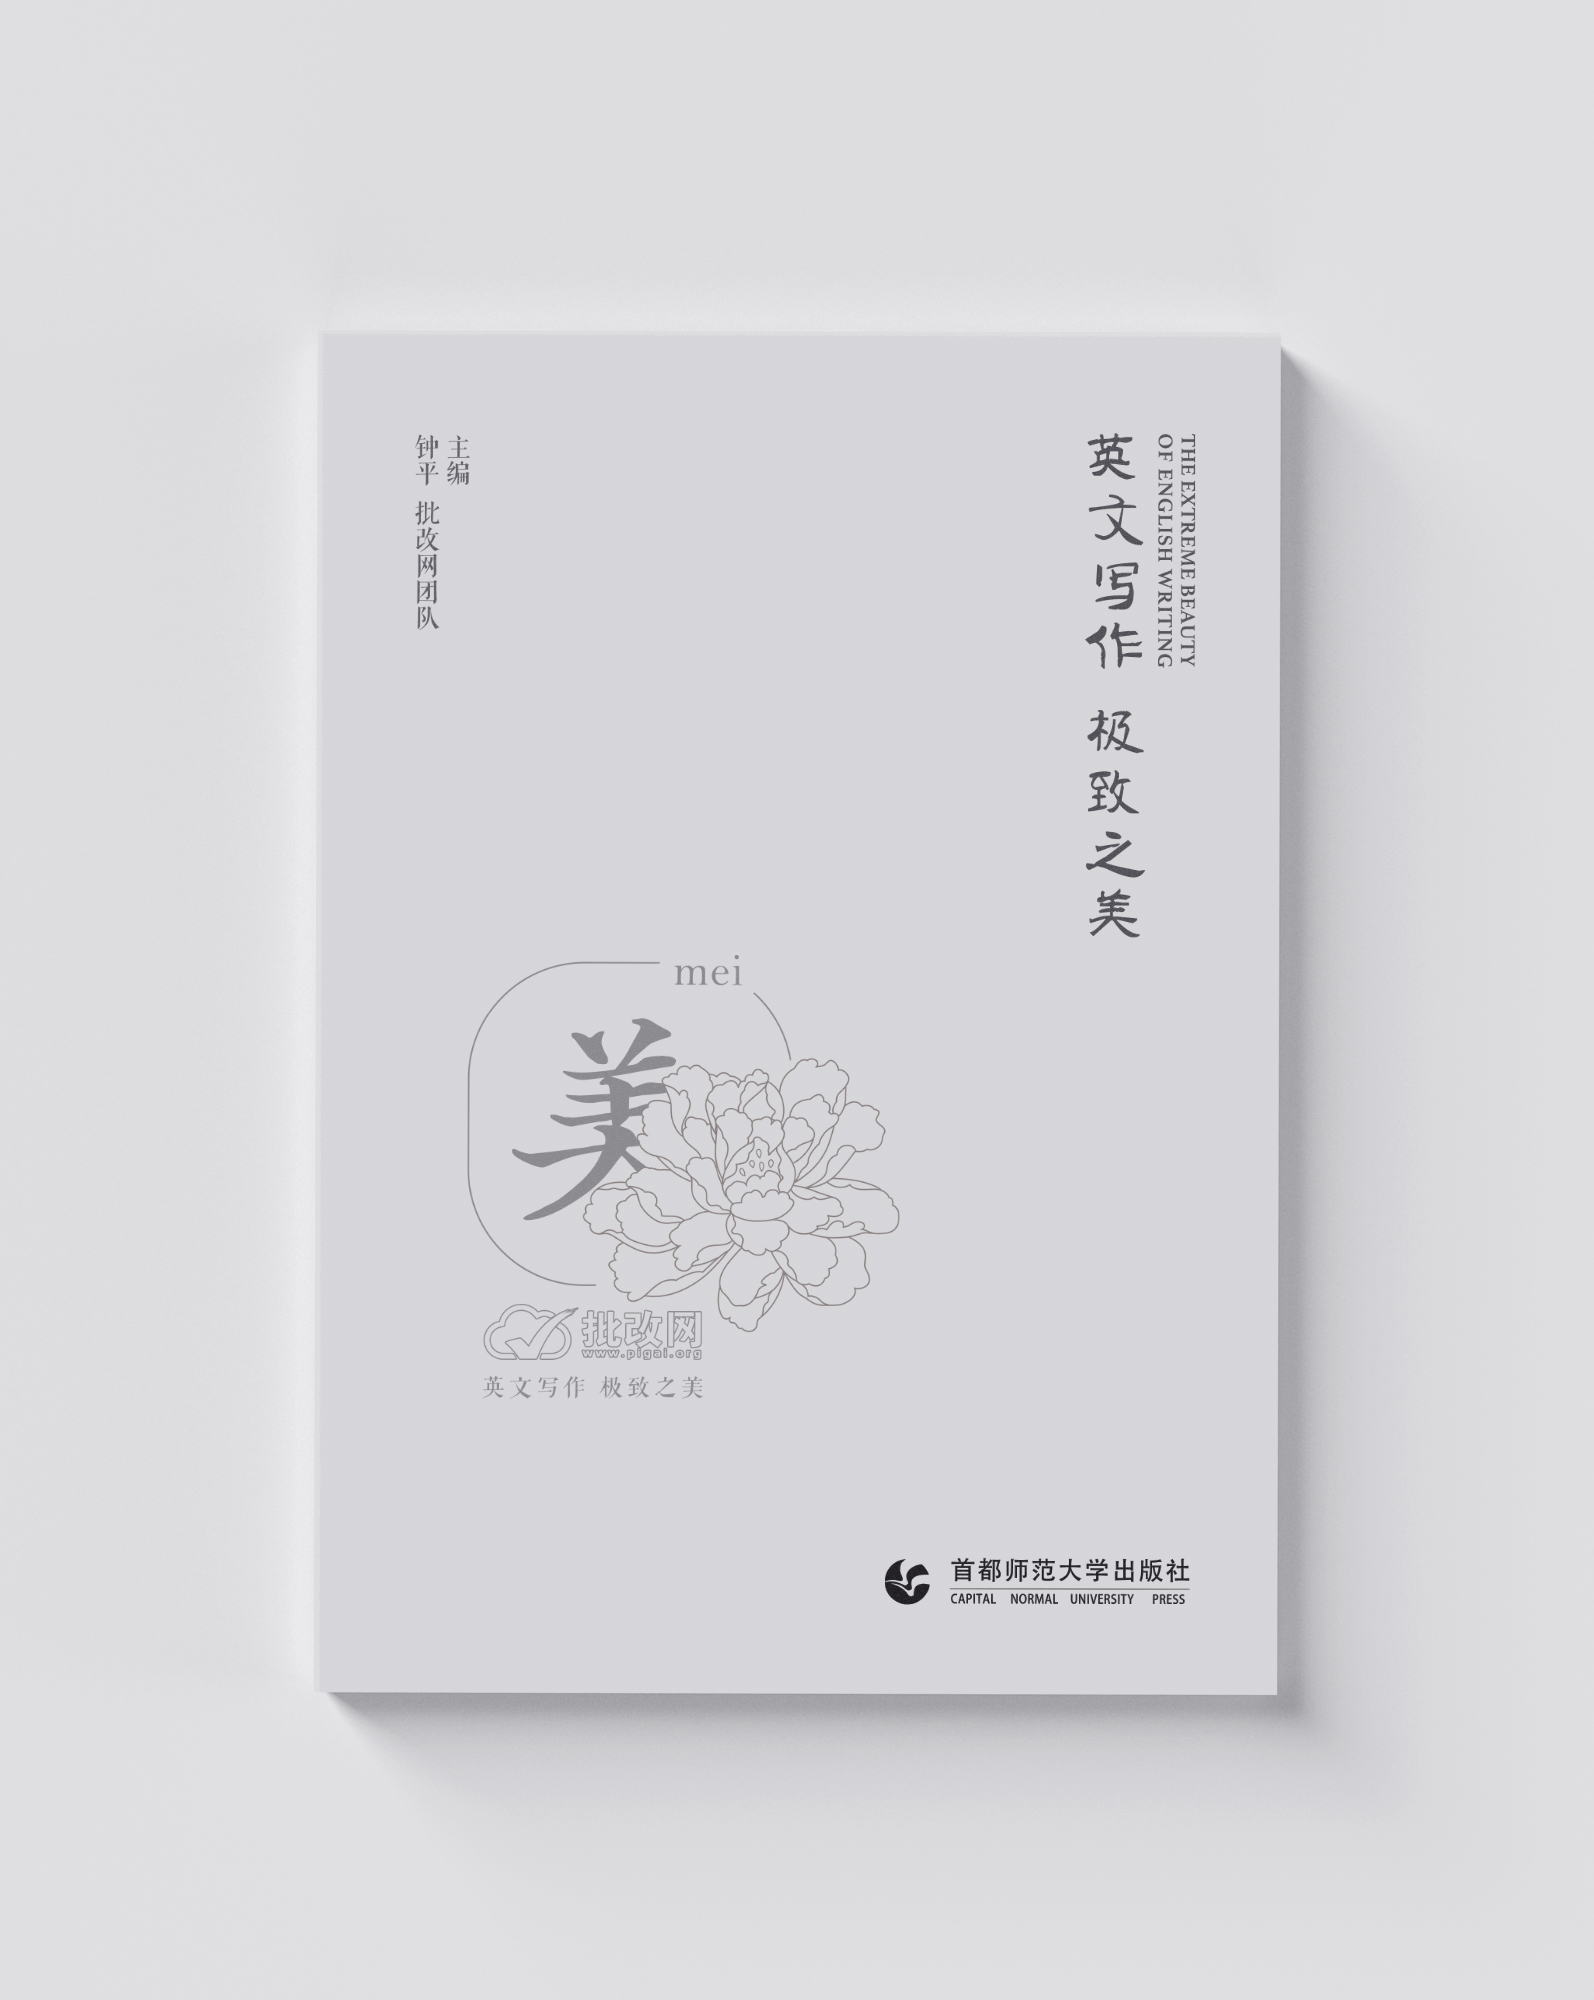 【书籍封面设计】中国风,简约设计